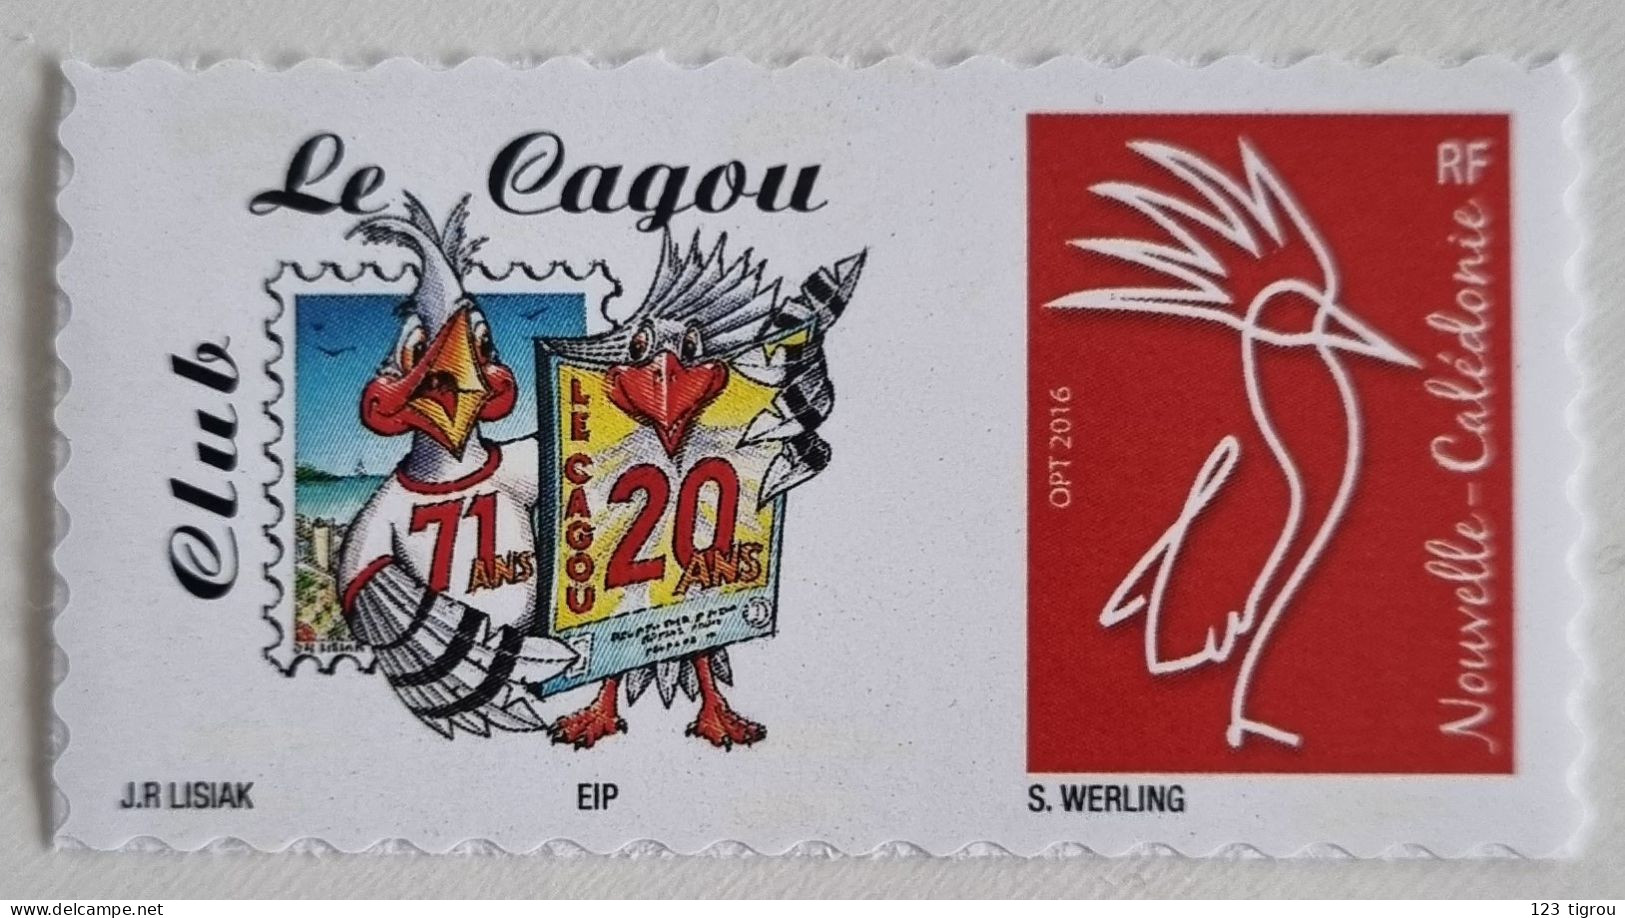 CAGOU PERSONNALISE ANNIVERSAIRE DU CLUB CAGOU 2018 TETE DE CAGOU : 2EME TIRAGE SANS ANNIVERSAIRES - Unused Stamps